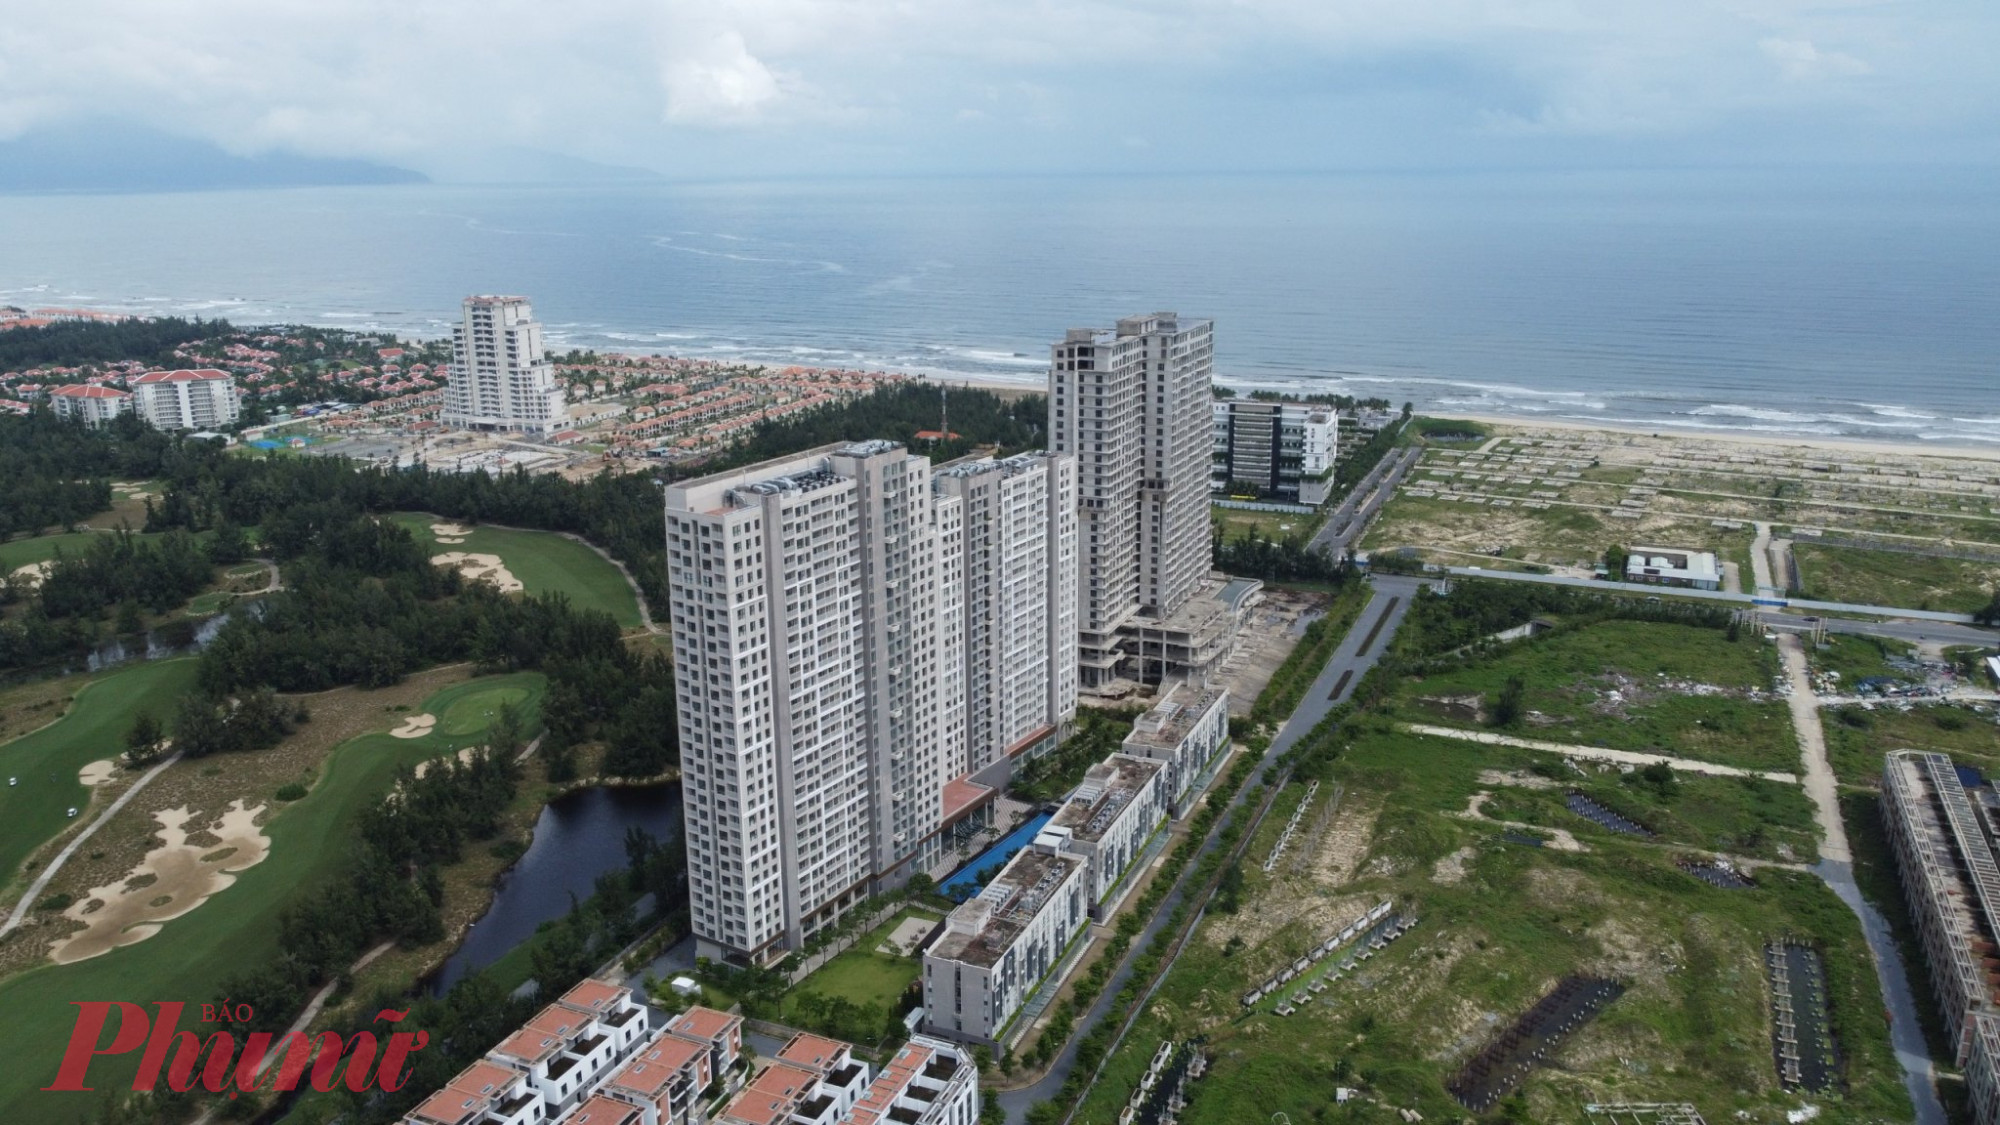 Cocobay là dự án bất động sản lớn ở Đà Nẵng được rao bán rầm rộ một thời, thu hút hàng ngàn nhà đầu tư khắp cả nước